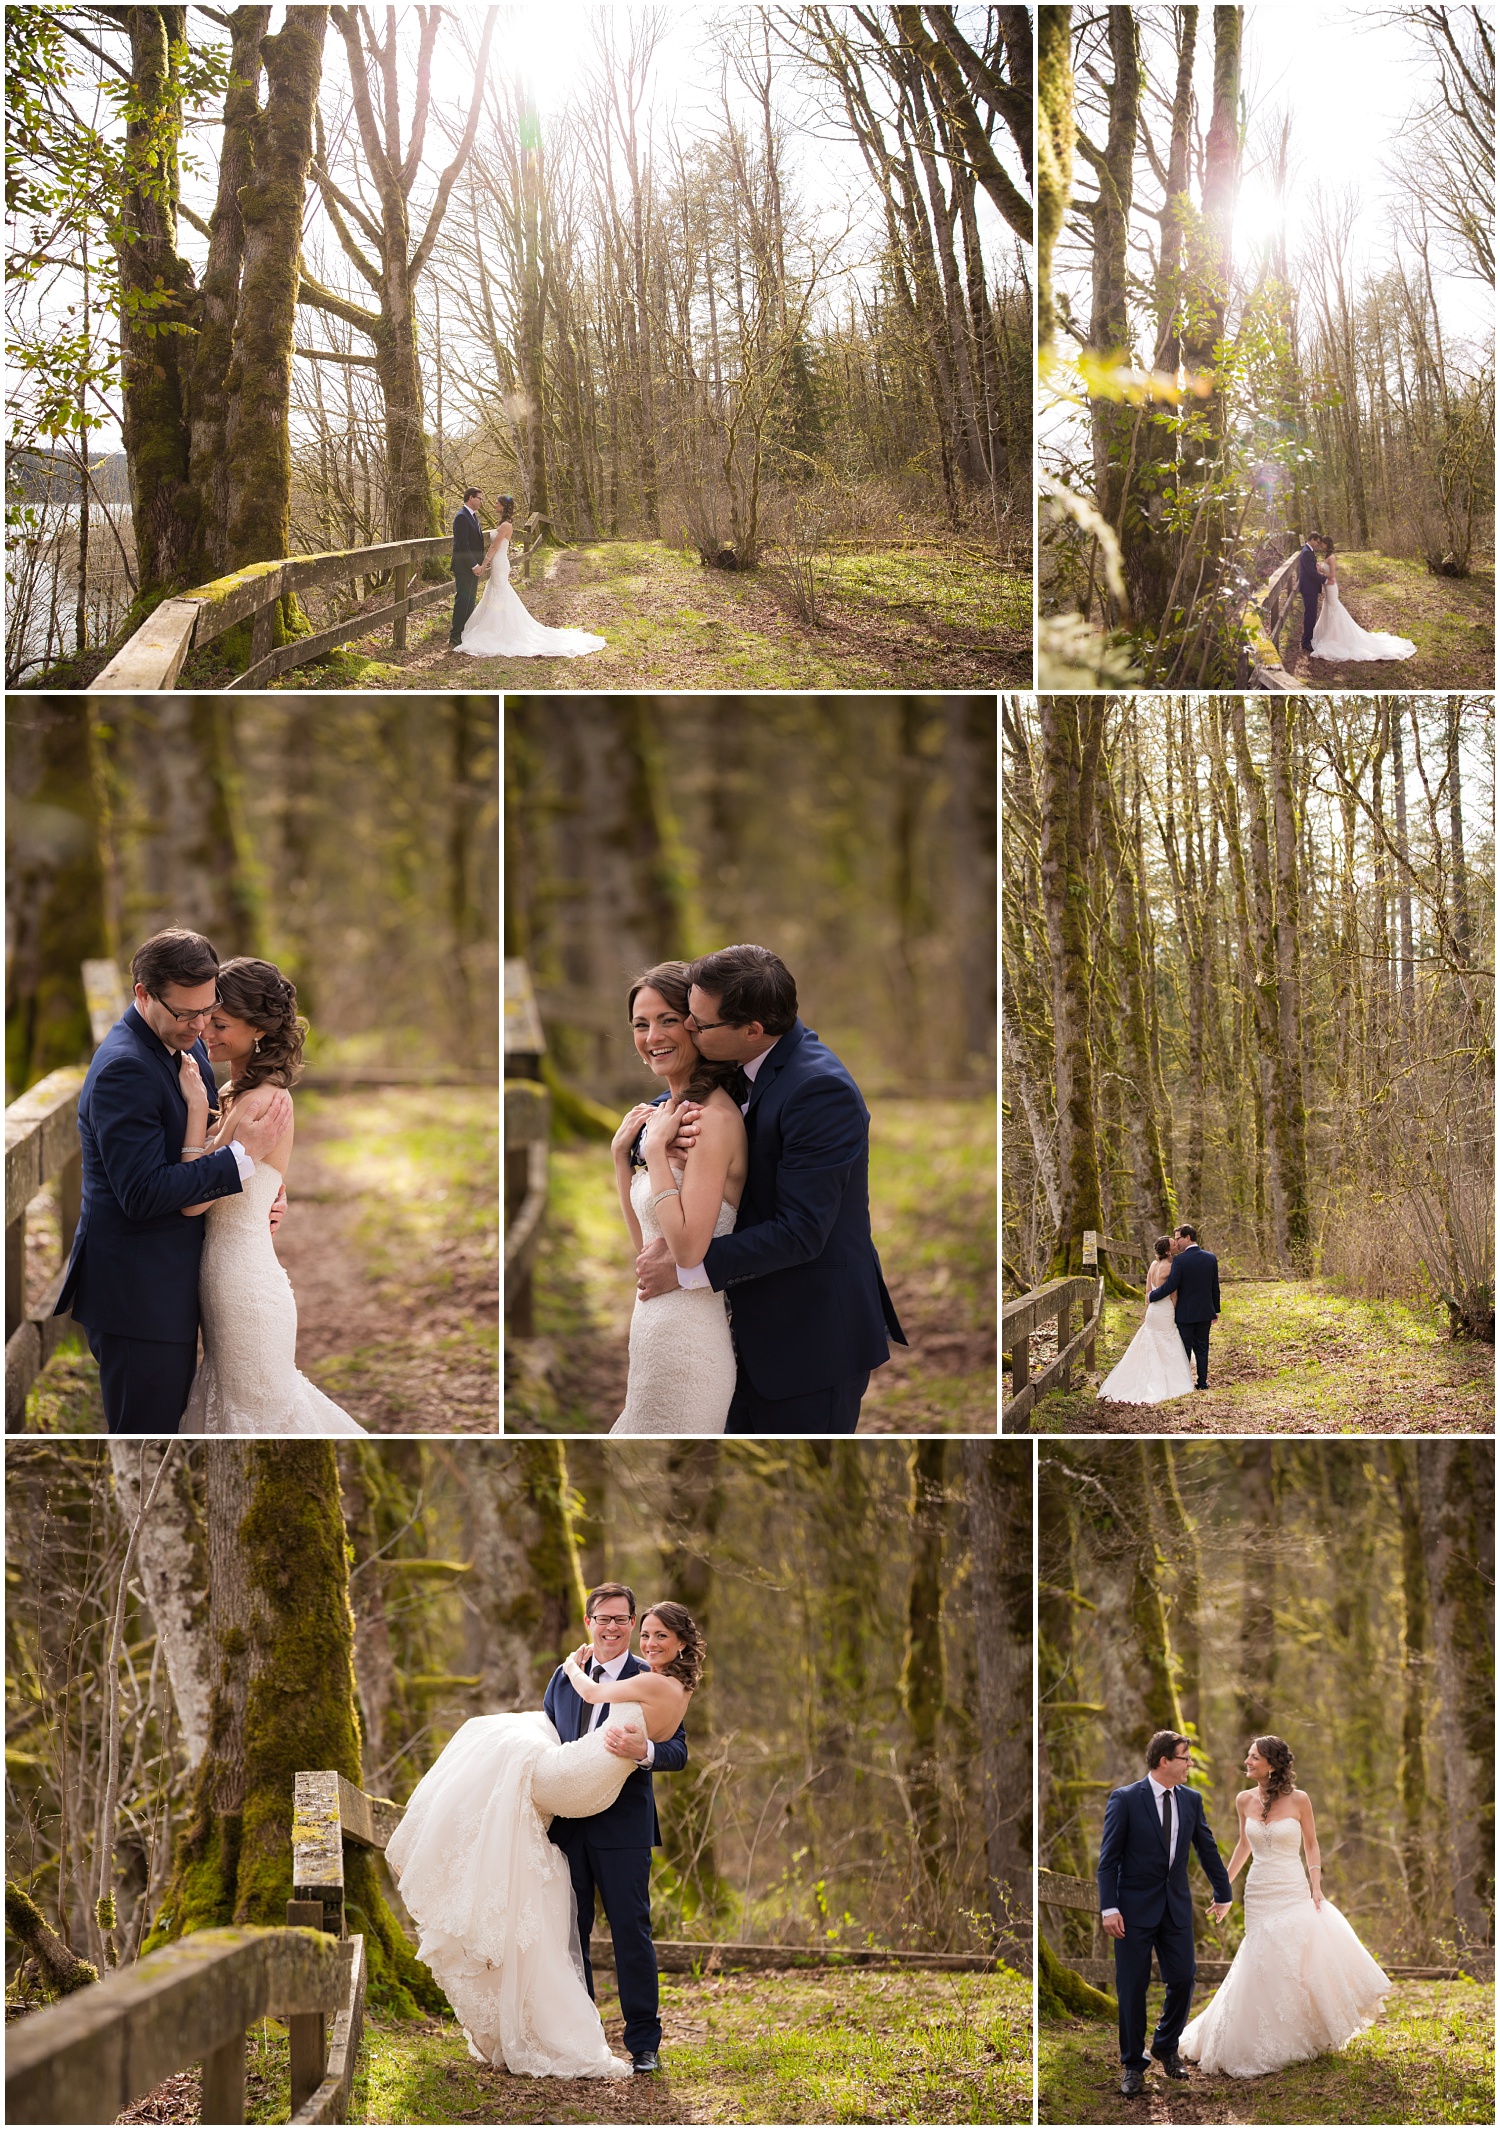 Amazing Day Photography - Mission Wedding Photographer - Hayward Lake Bridal Session - Langley Wedding Photographer (10).jpg